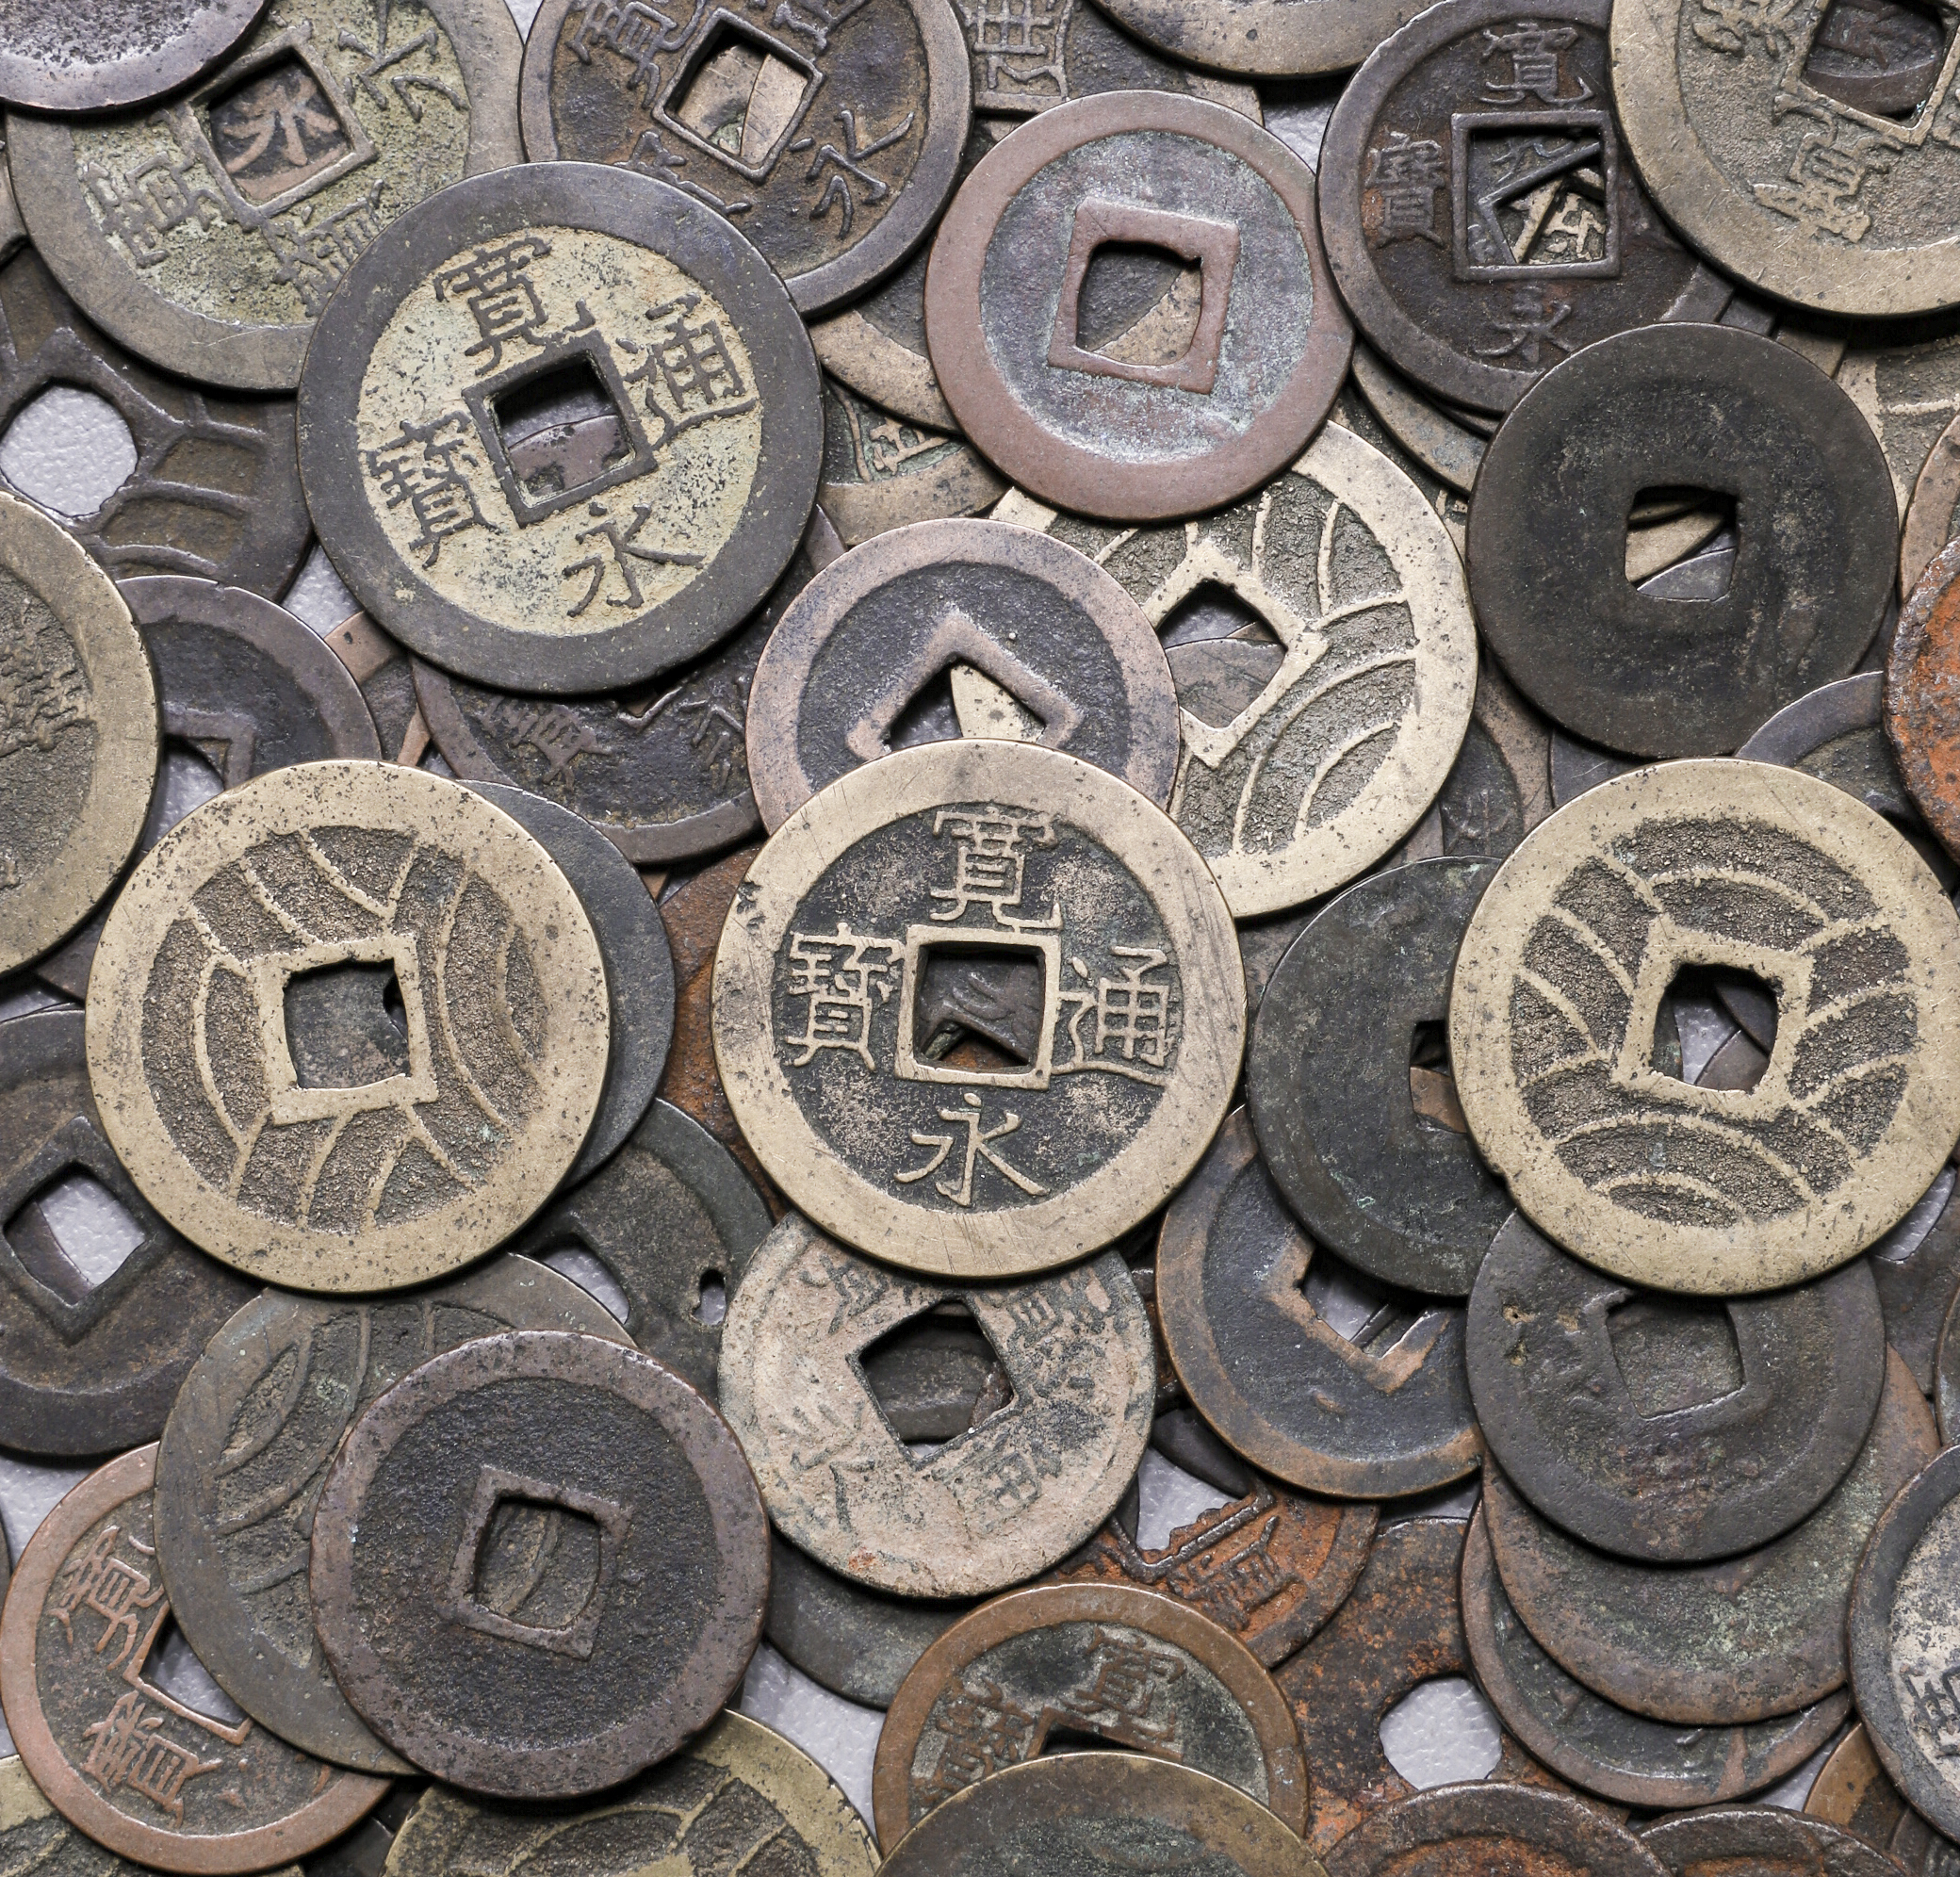 限时竞拍,日本新寛永通宝(含鉄寛永) Shin-Kaneisen(inc, iron coins 